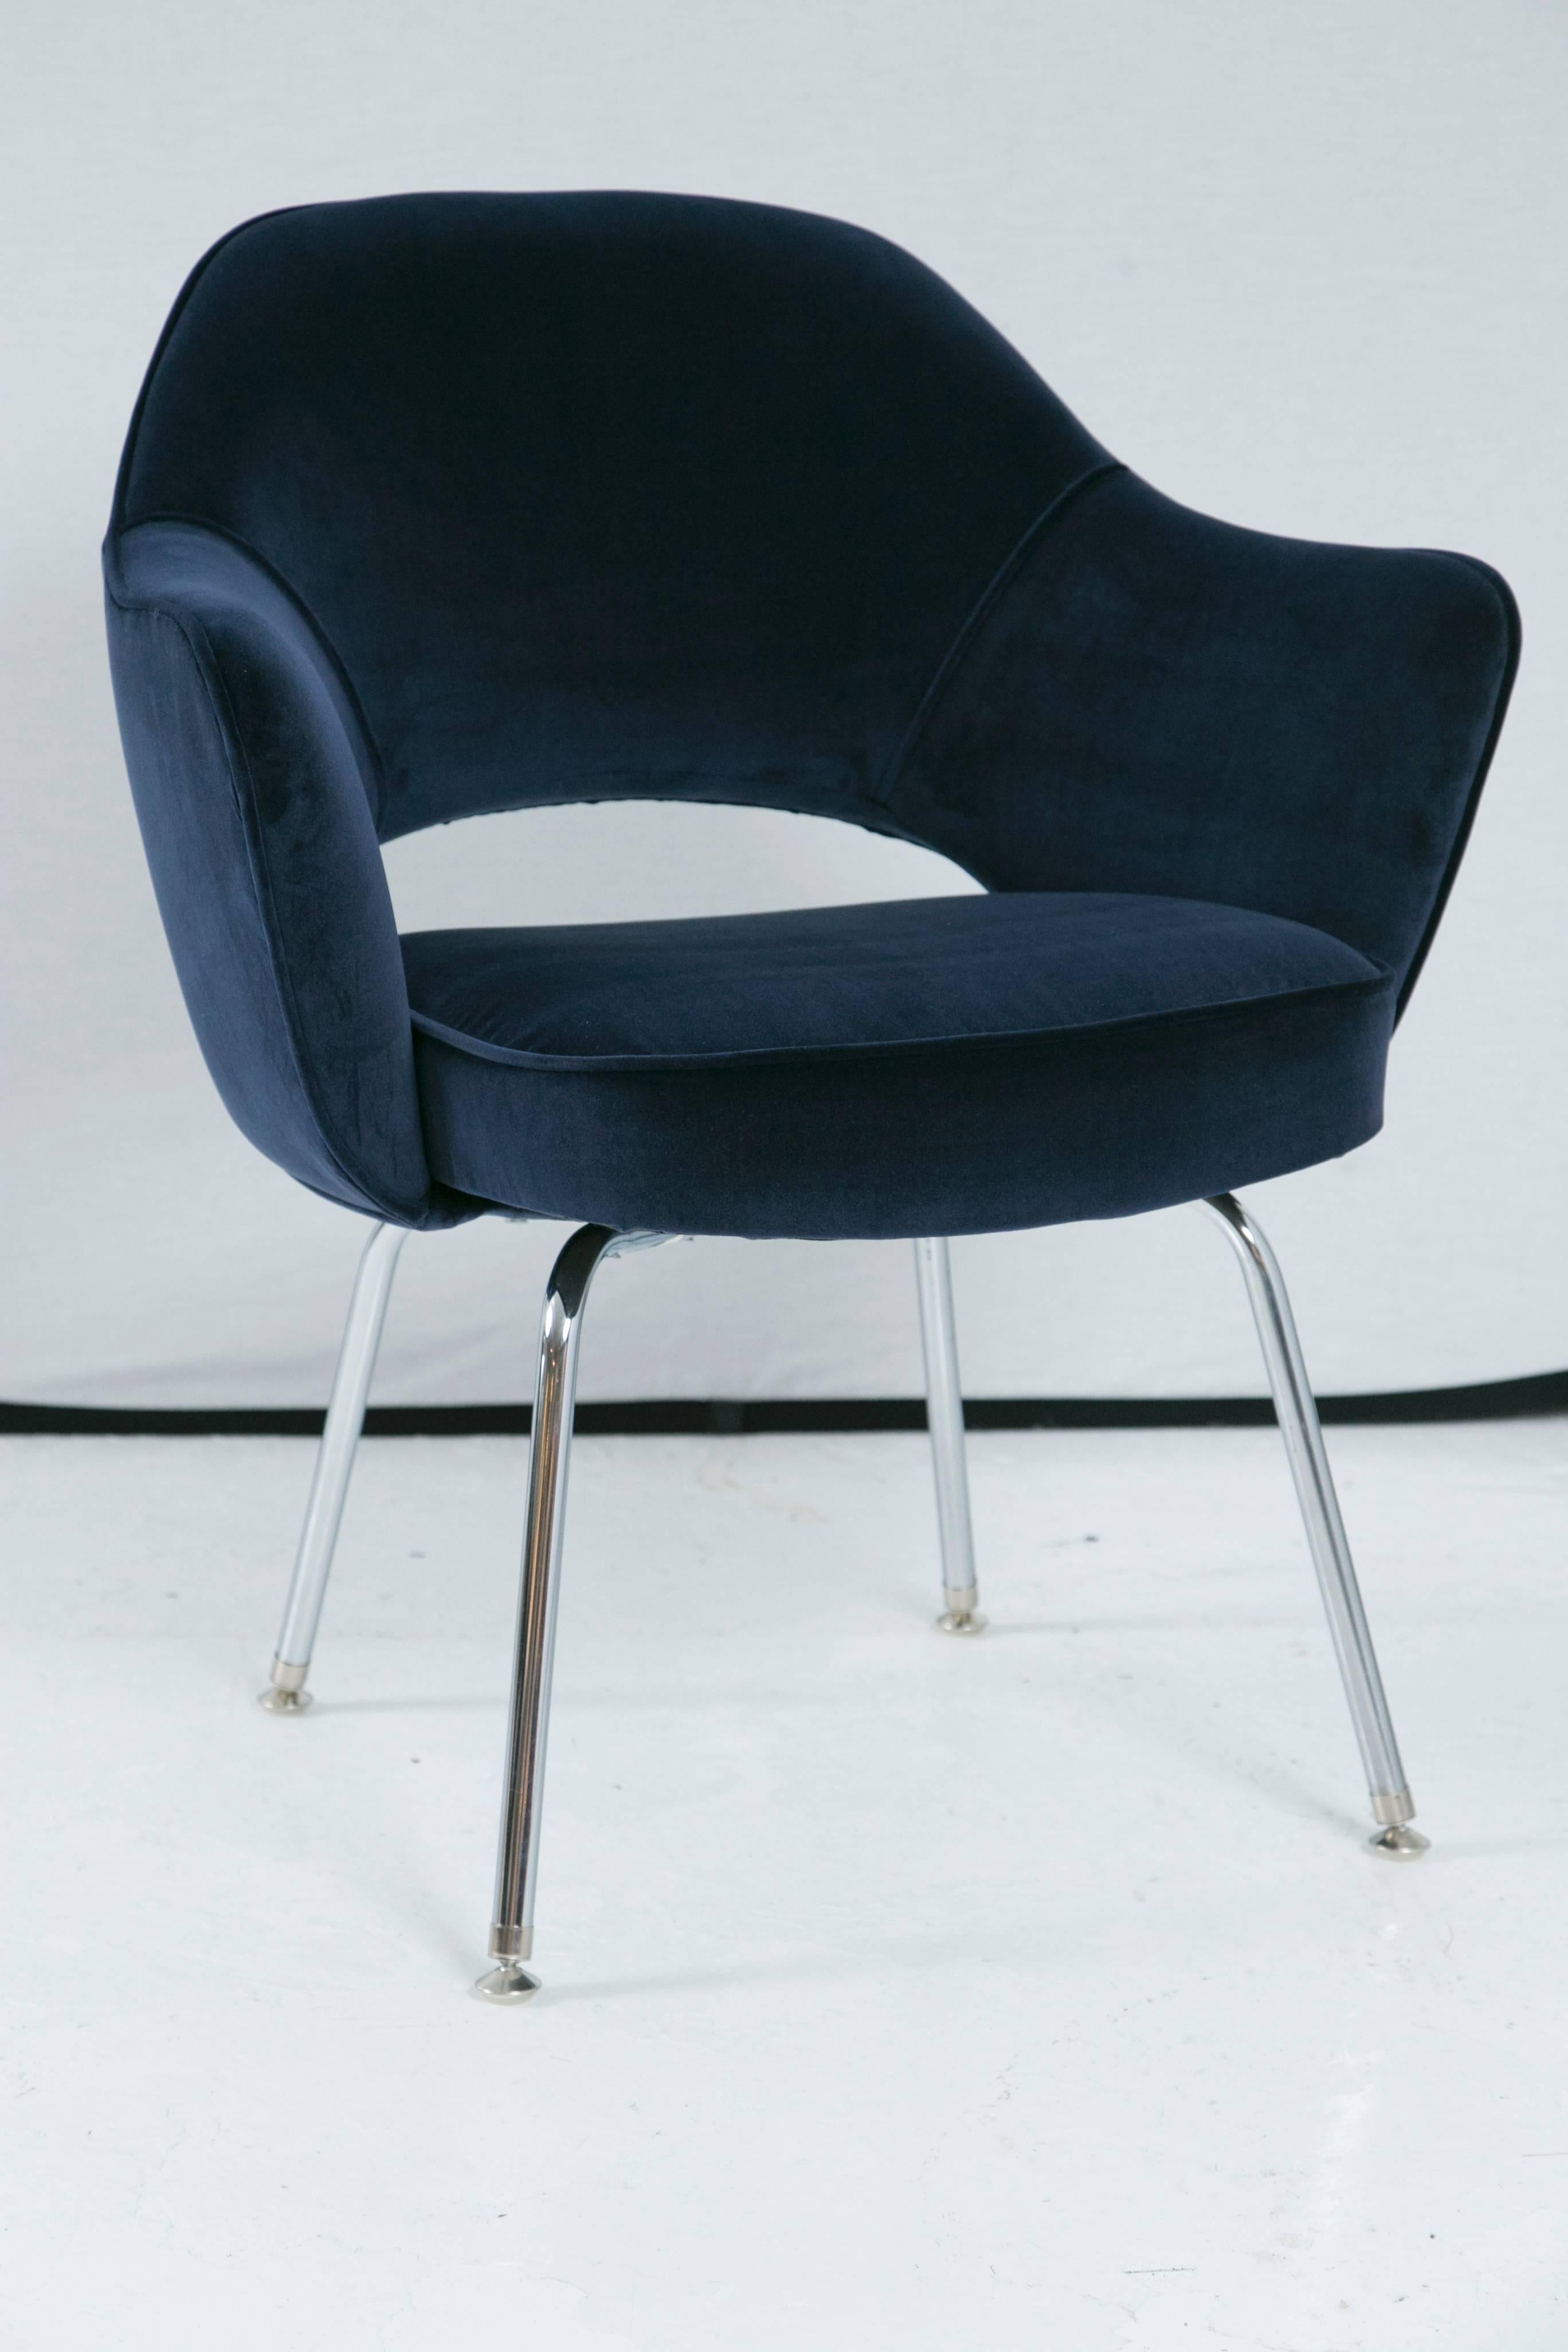 Depuis des années, Montage restaure des fauteuils de direction Saarinen dans tous les tissus possibles et imaginables, dans son propre atelier. Nous avons restauré ces chaises en utilisant un superbe velours italien de couleur marine. Des artisans